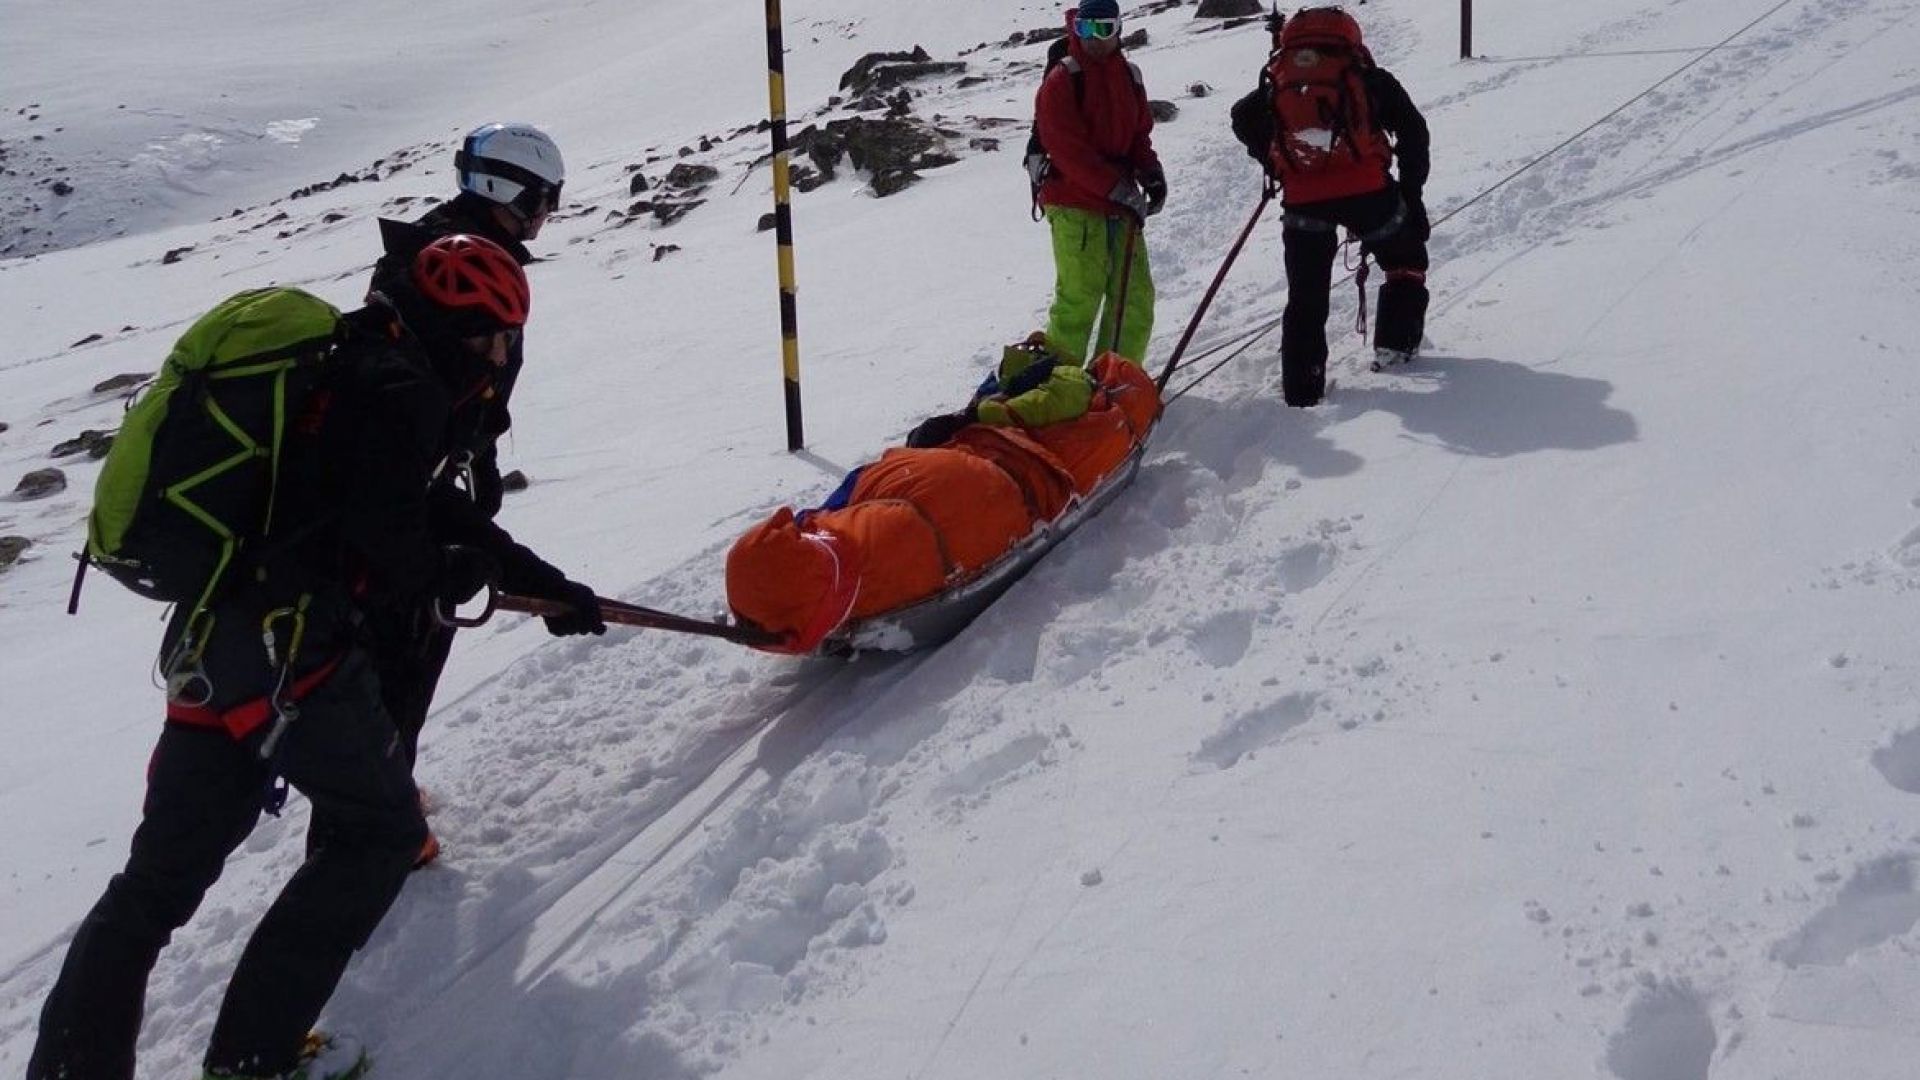 Британски скиор загина на място след силен удар в дърво в Банско